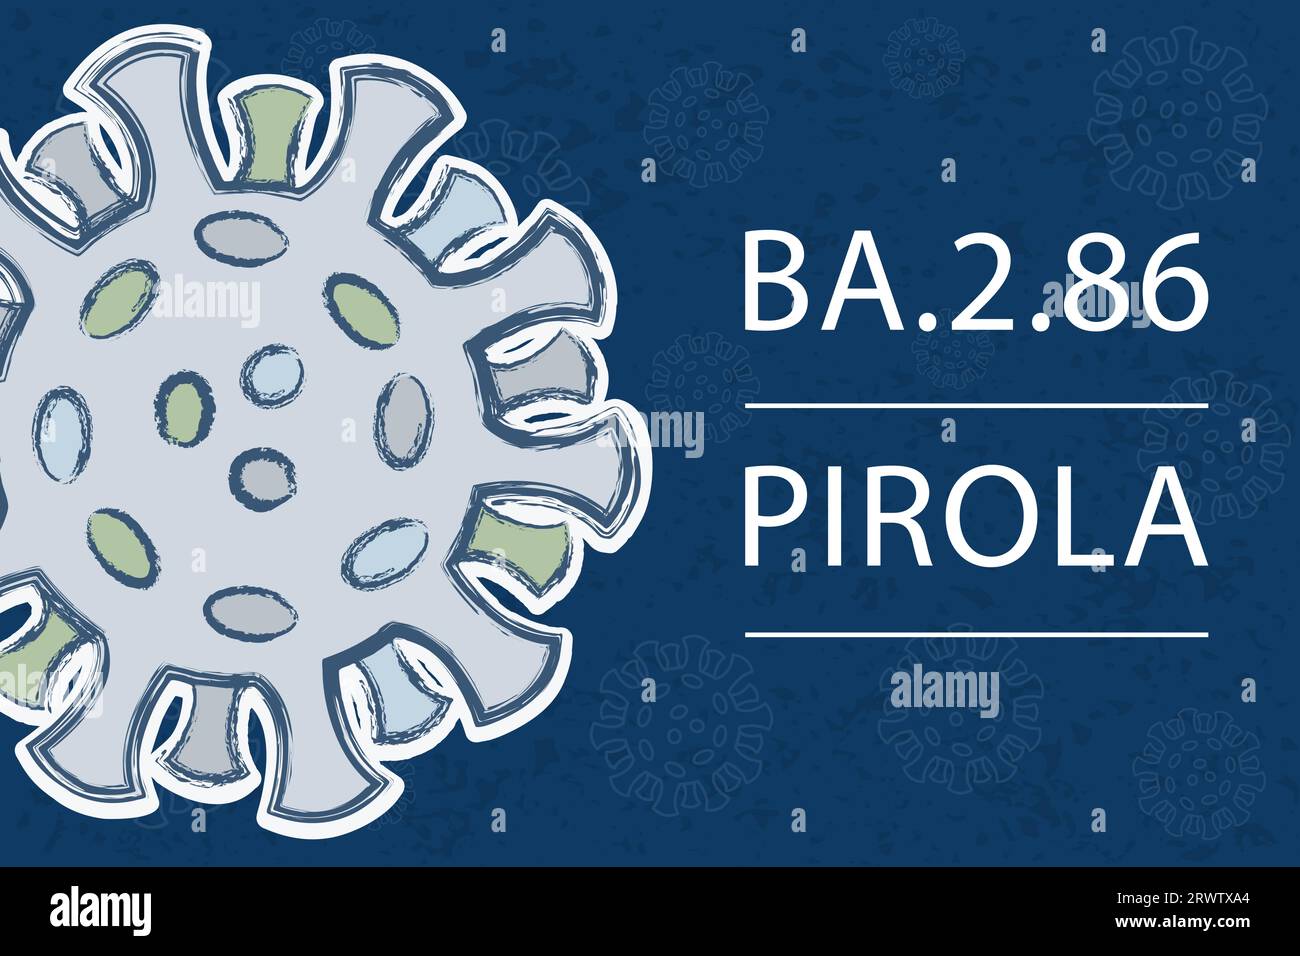 Una nuova variante del coronavirus BA.2,86, sottolinea di Omicron BA.2. Conosciuto anche come "Pirola". Pango lignaggio B.1,1.529.2,86. Testo bianco su sfondo blu scuro Illustrazione Vettoriale